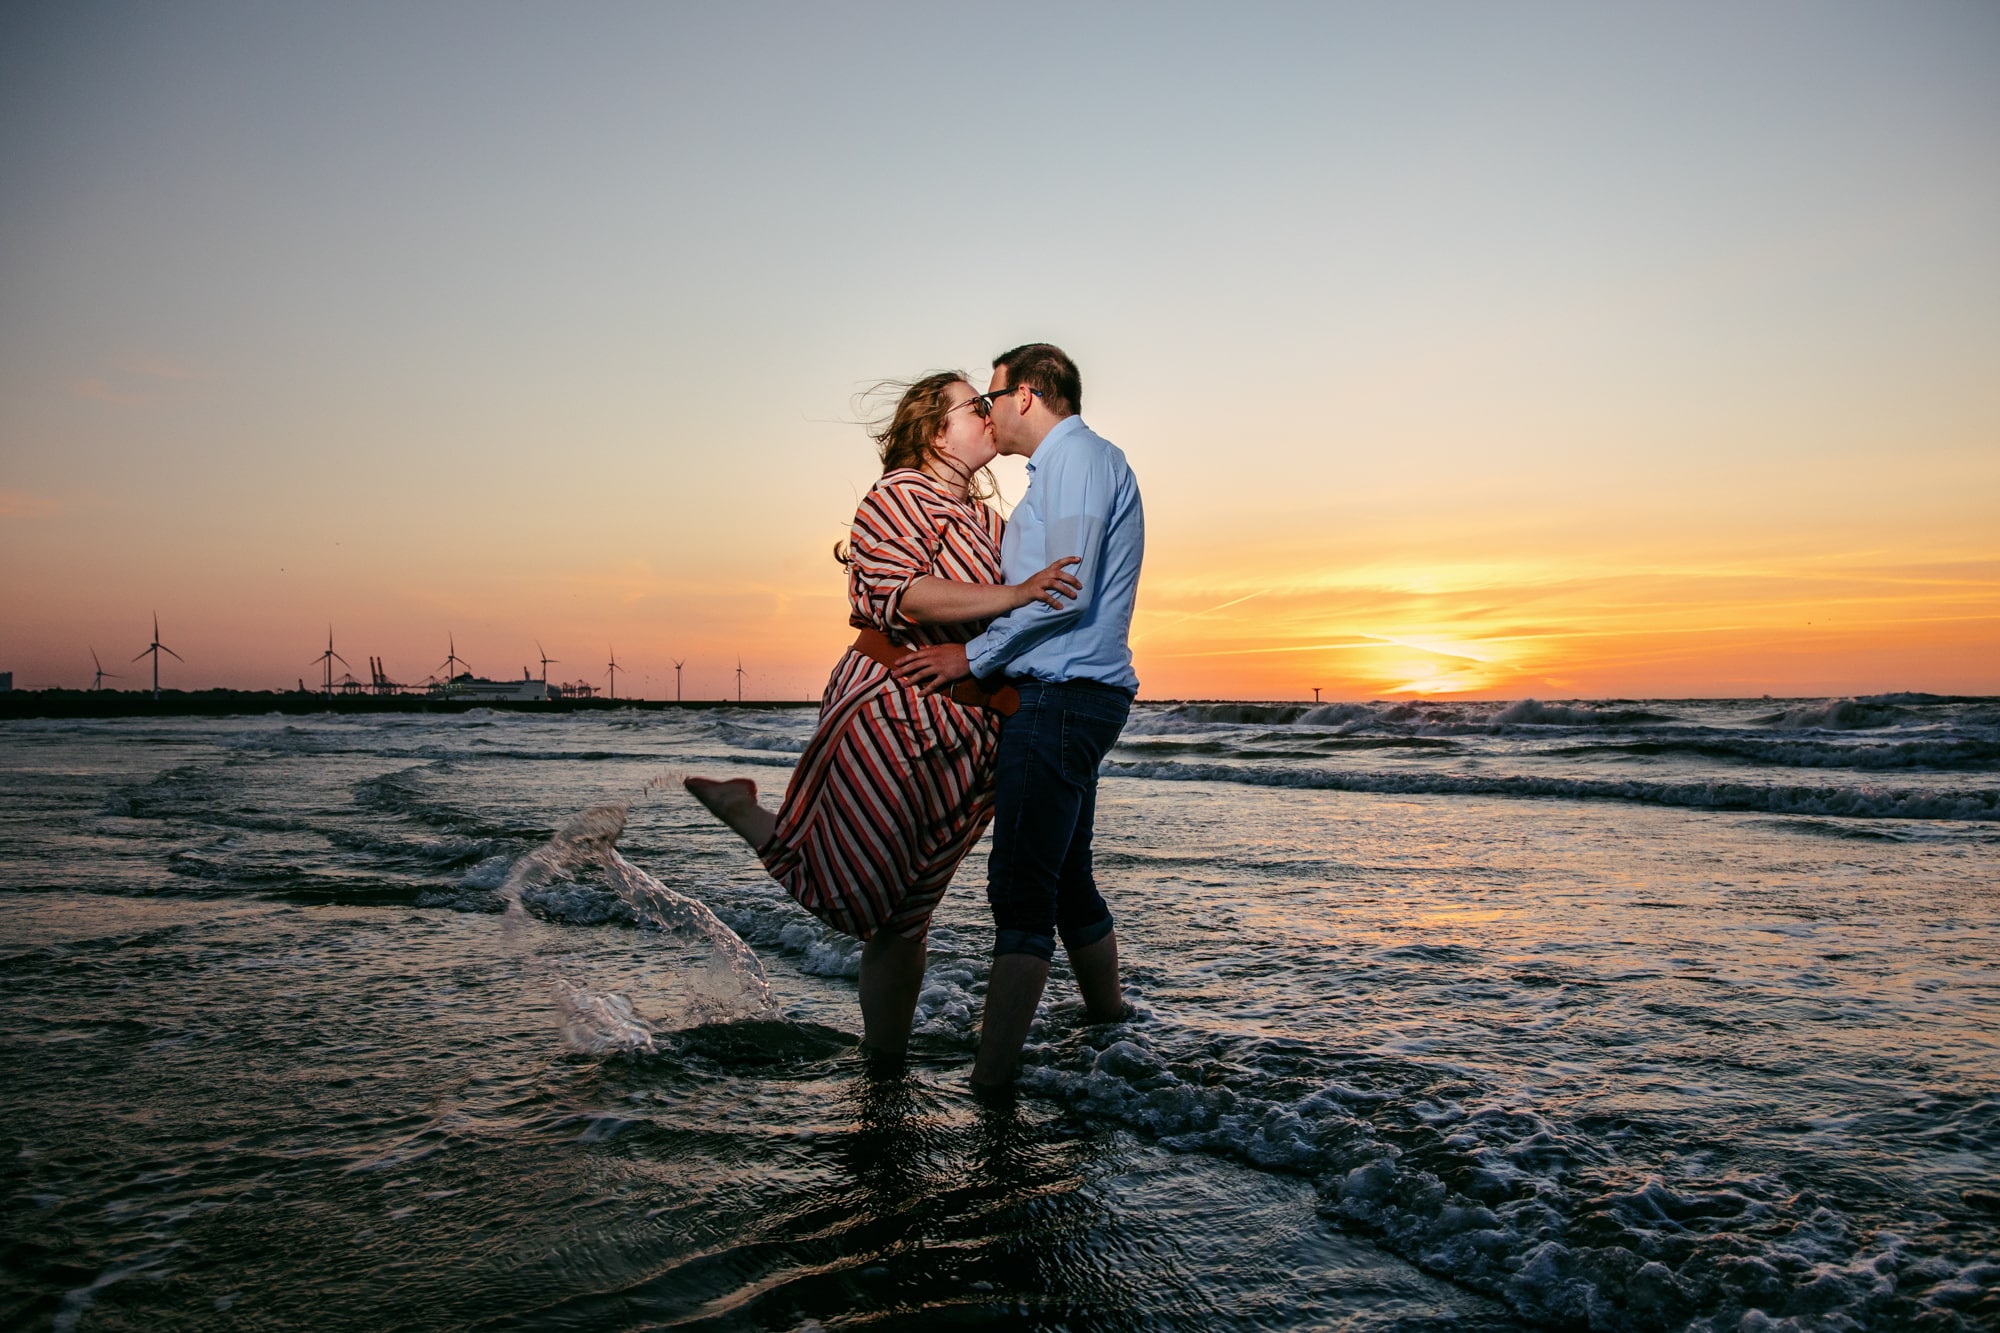 Een gepassioneerde loveshoot waarin een kussend koppel in de oceaan bij zonsondergang wordt vastgelegd.